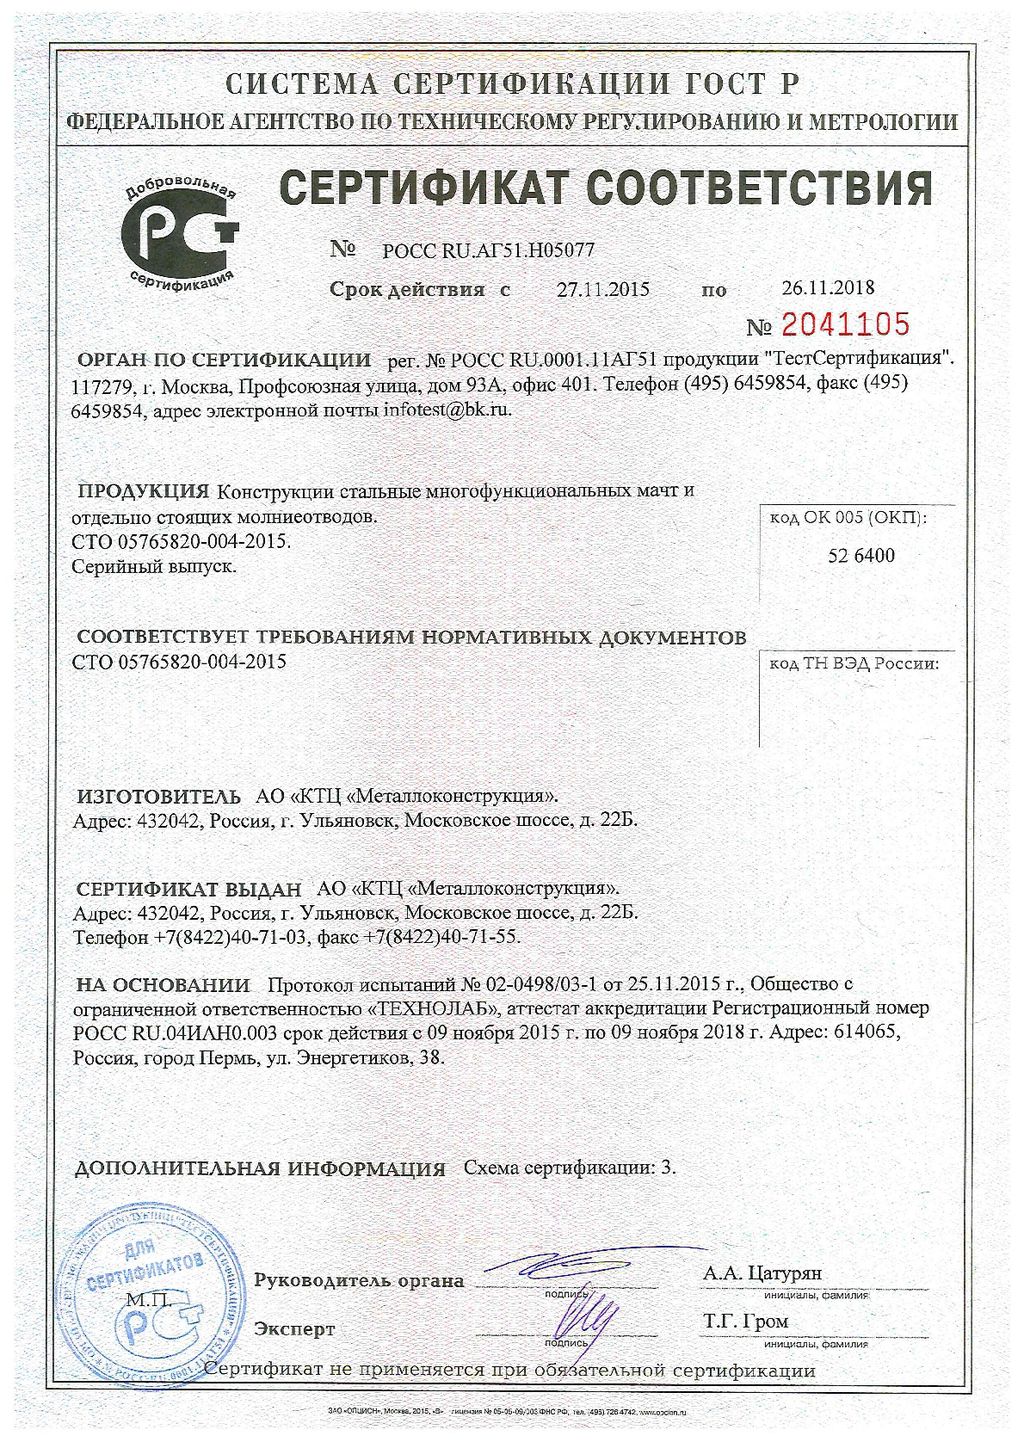 Сертификат соответствия № 2041105, КТЦ Металлоконструкция